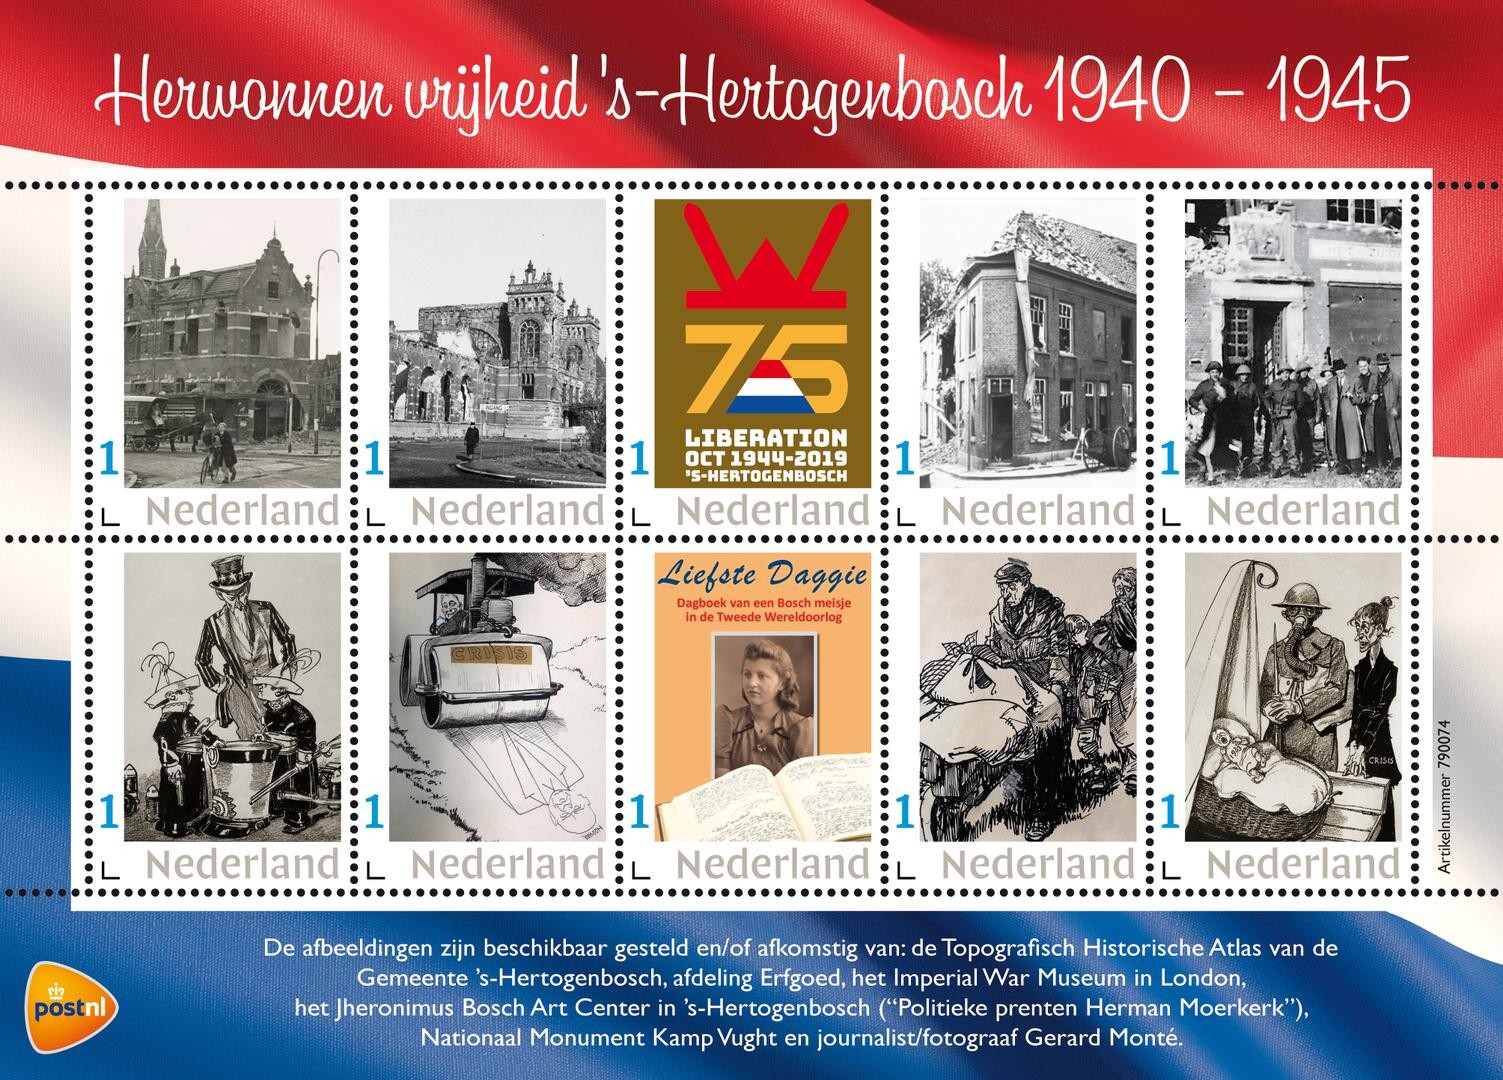 Herwonnen vrijheid 's-Hertogenbosch 1940 - 1945